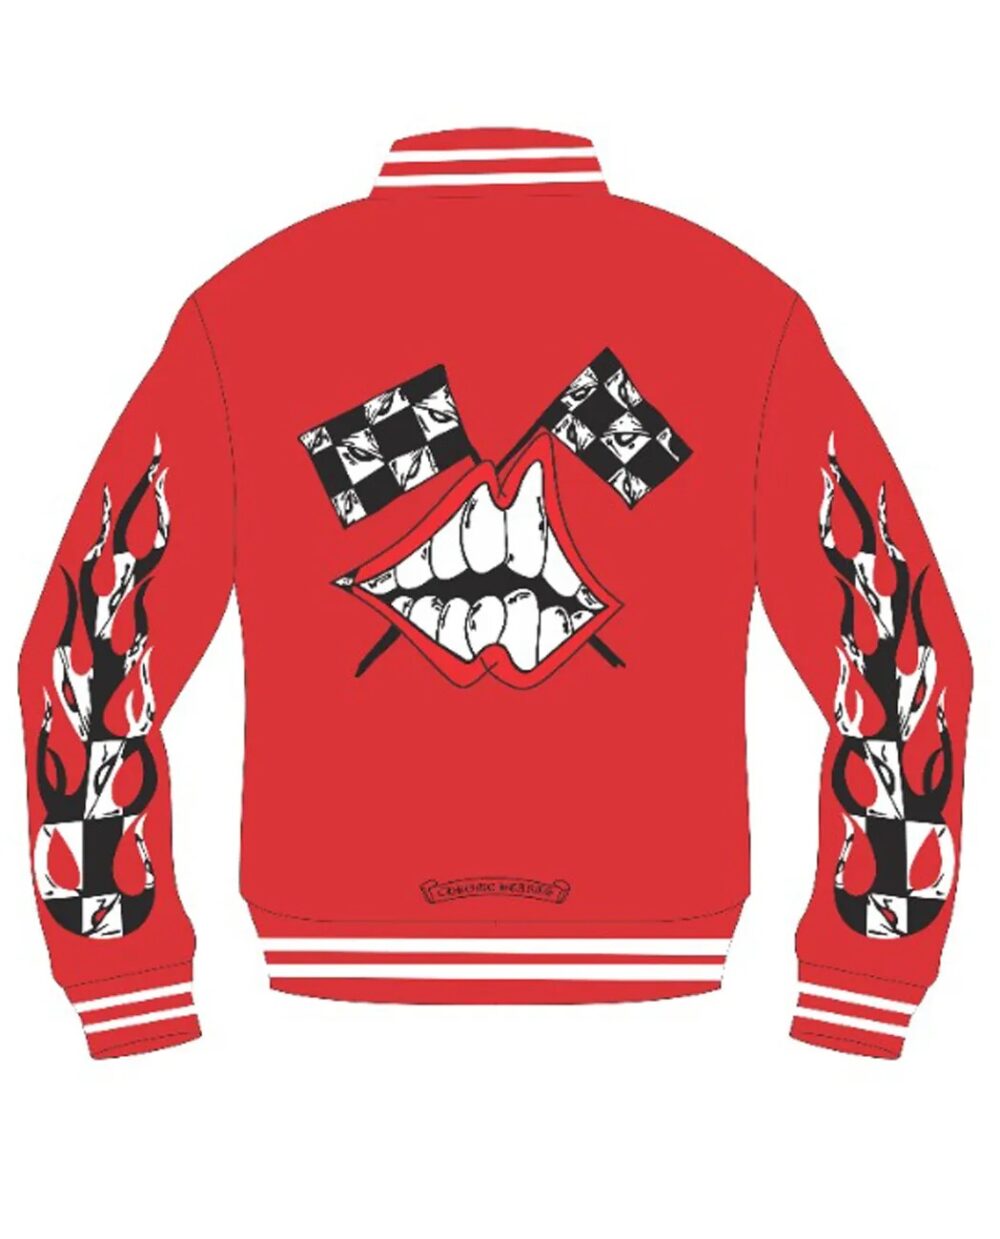 "Chrome Hearts Matty Boy Chomper Crewneck Jacket – a stylish and edgy fashion statement."